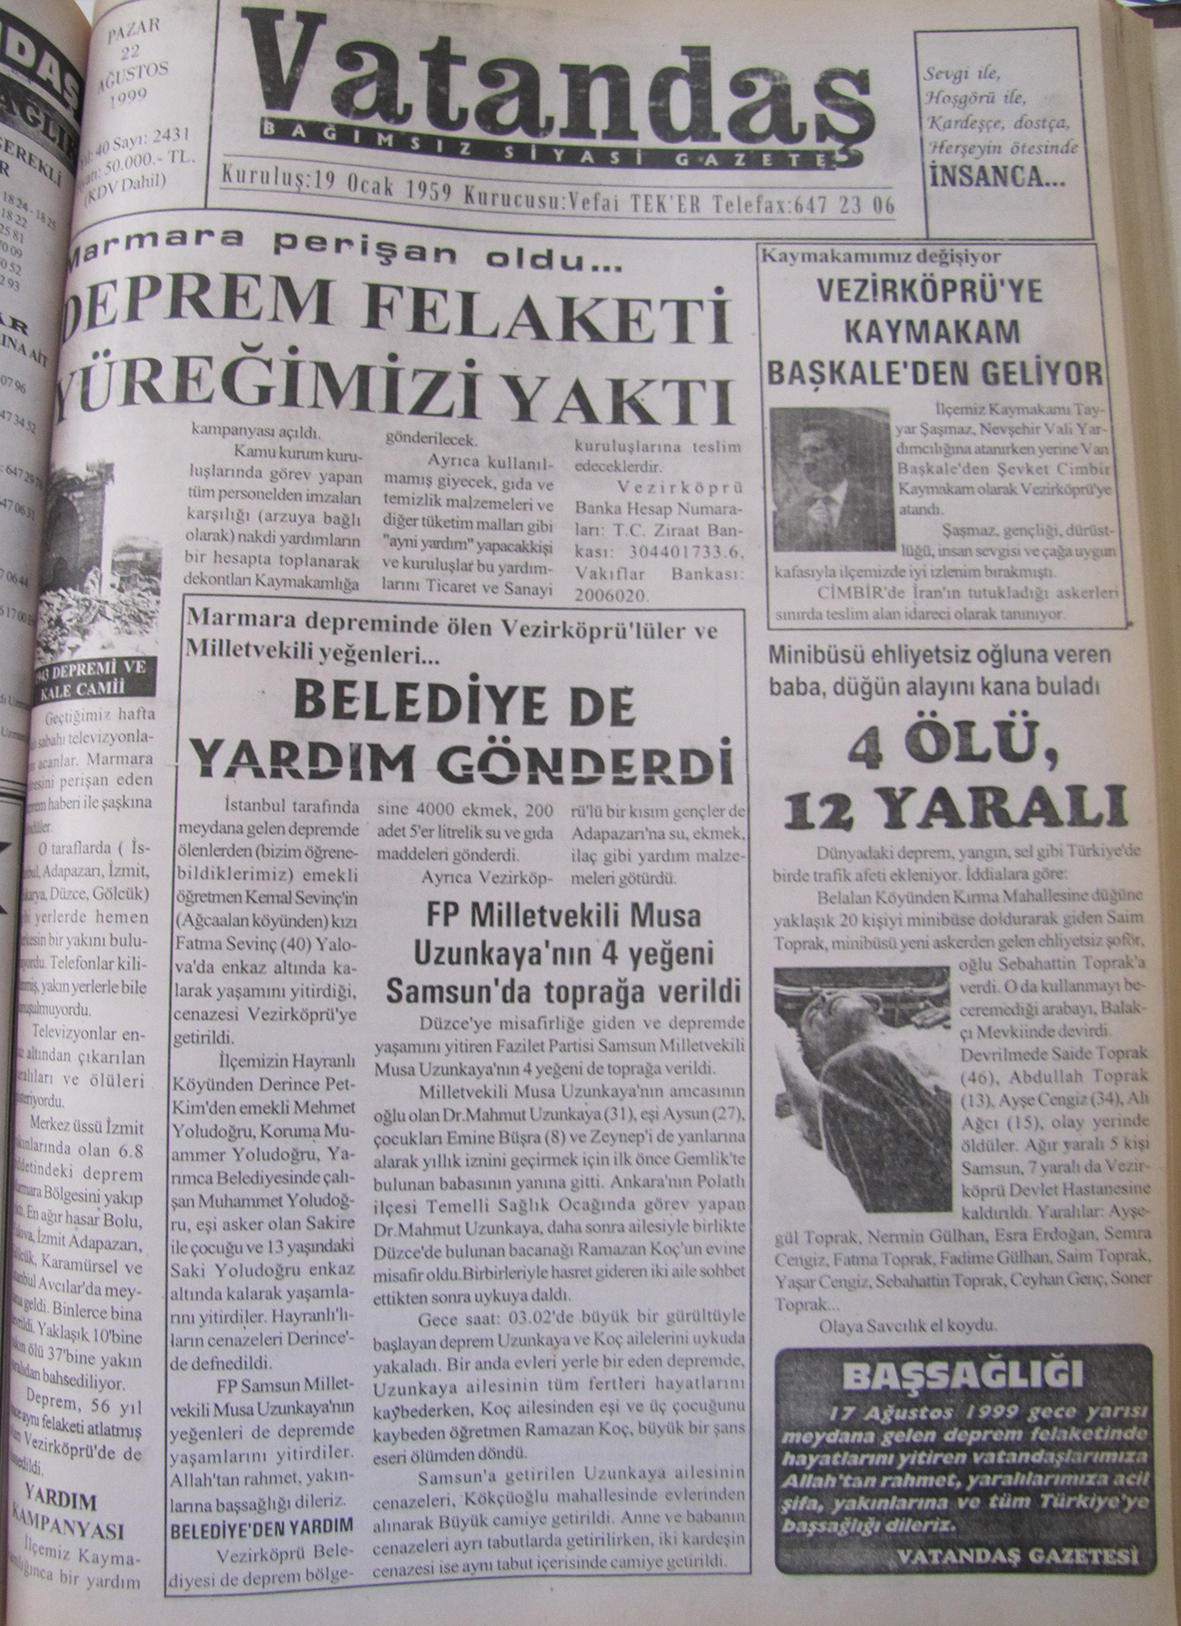 Marmara perişan oldu Deprem Felaketi Yüreğimizi Yaktı 22 Ağustos 1999  Pazar